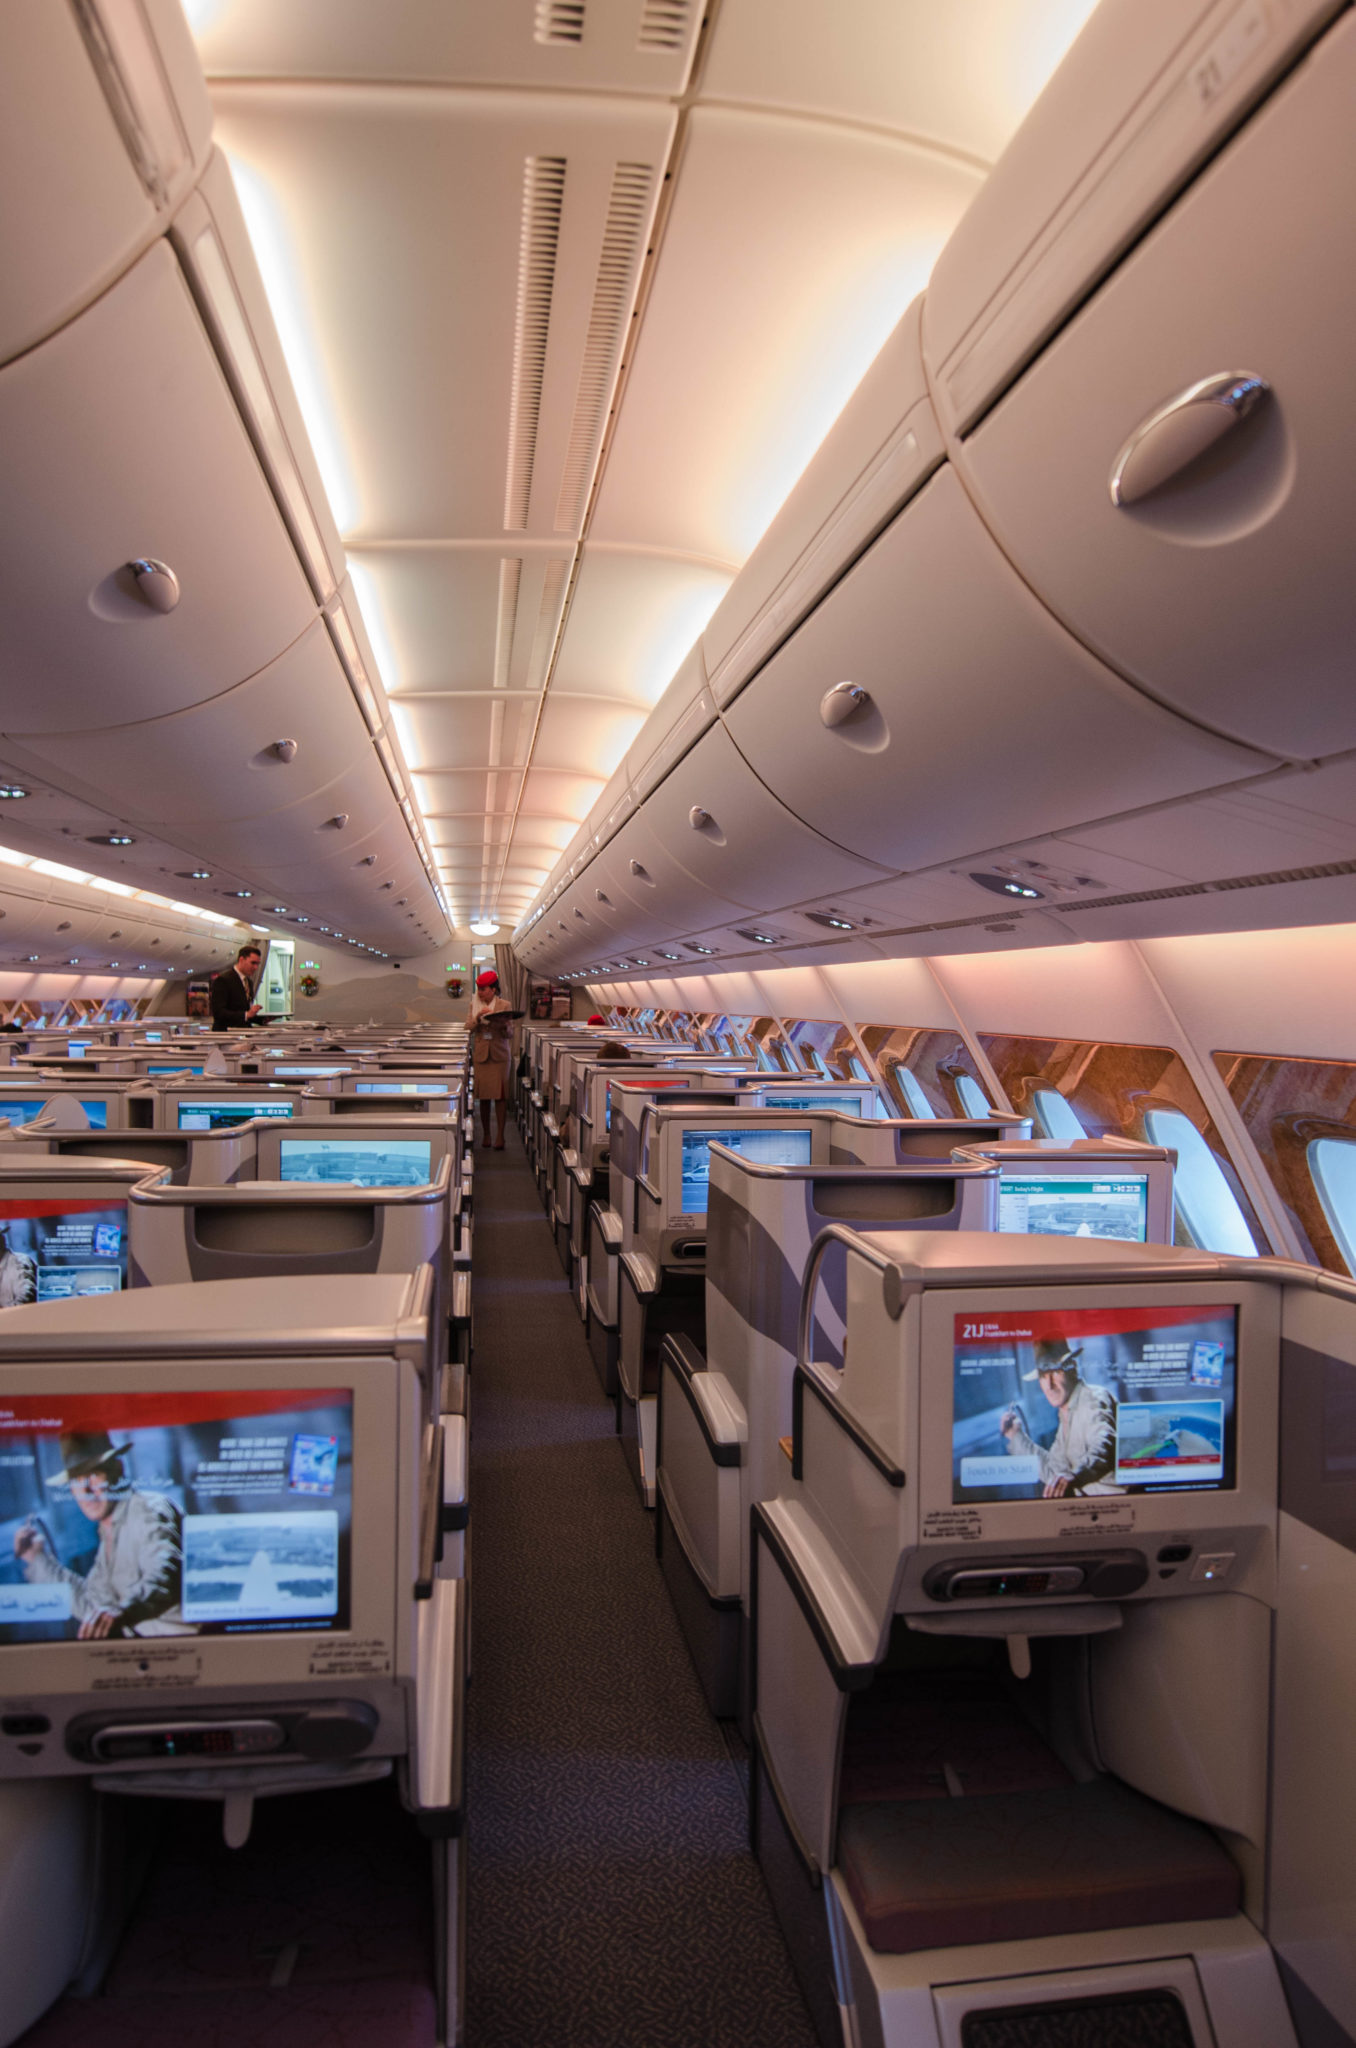 Emirates Business Class A380: Die Kabinen sind für im Emirates typisch klassischen Design gehalten